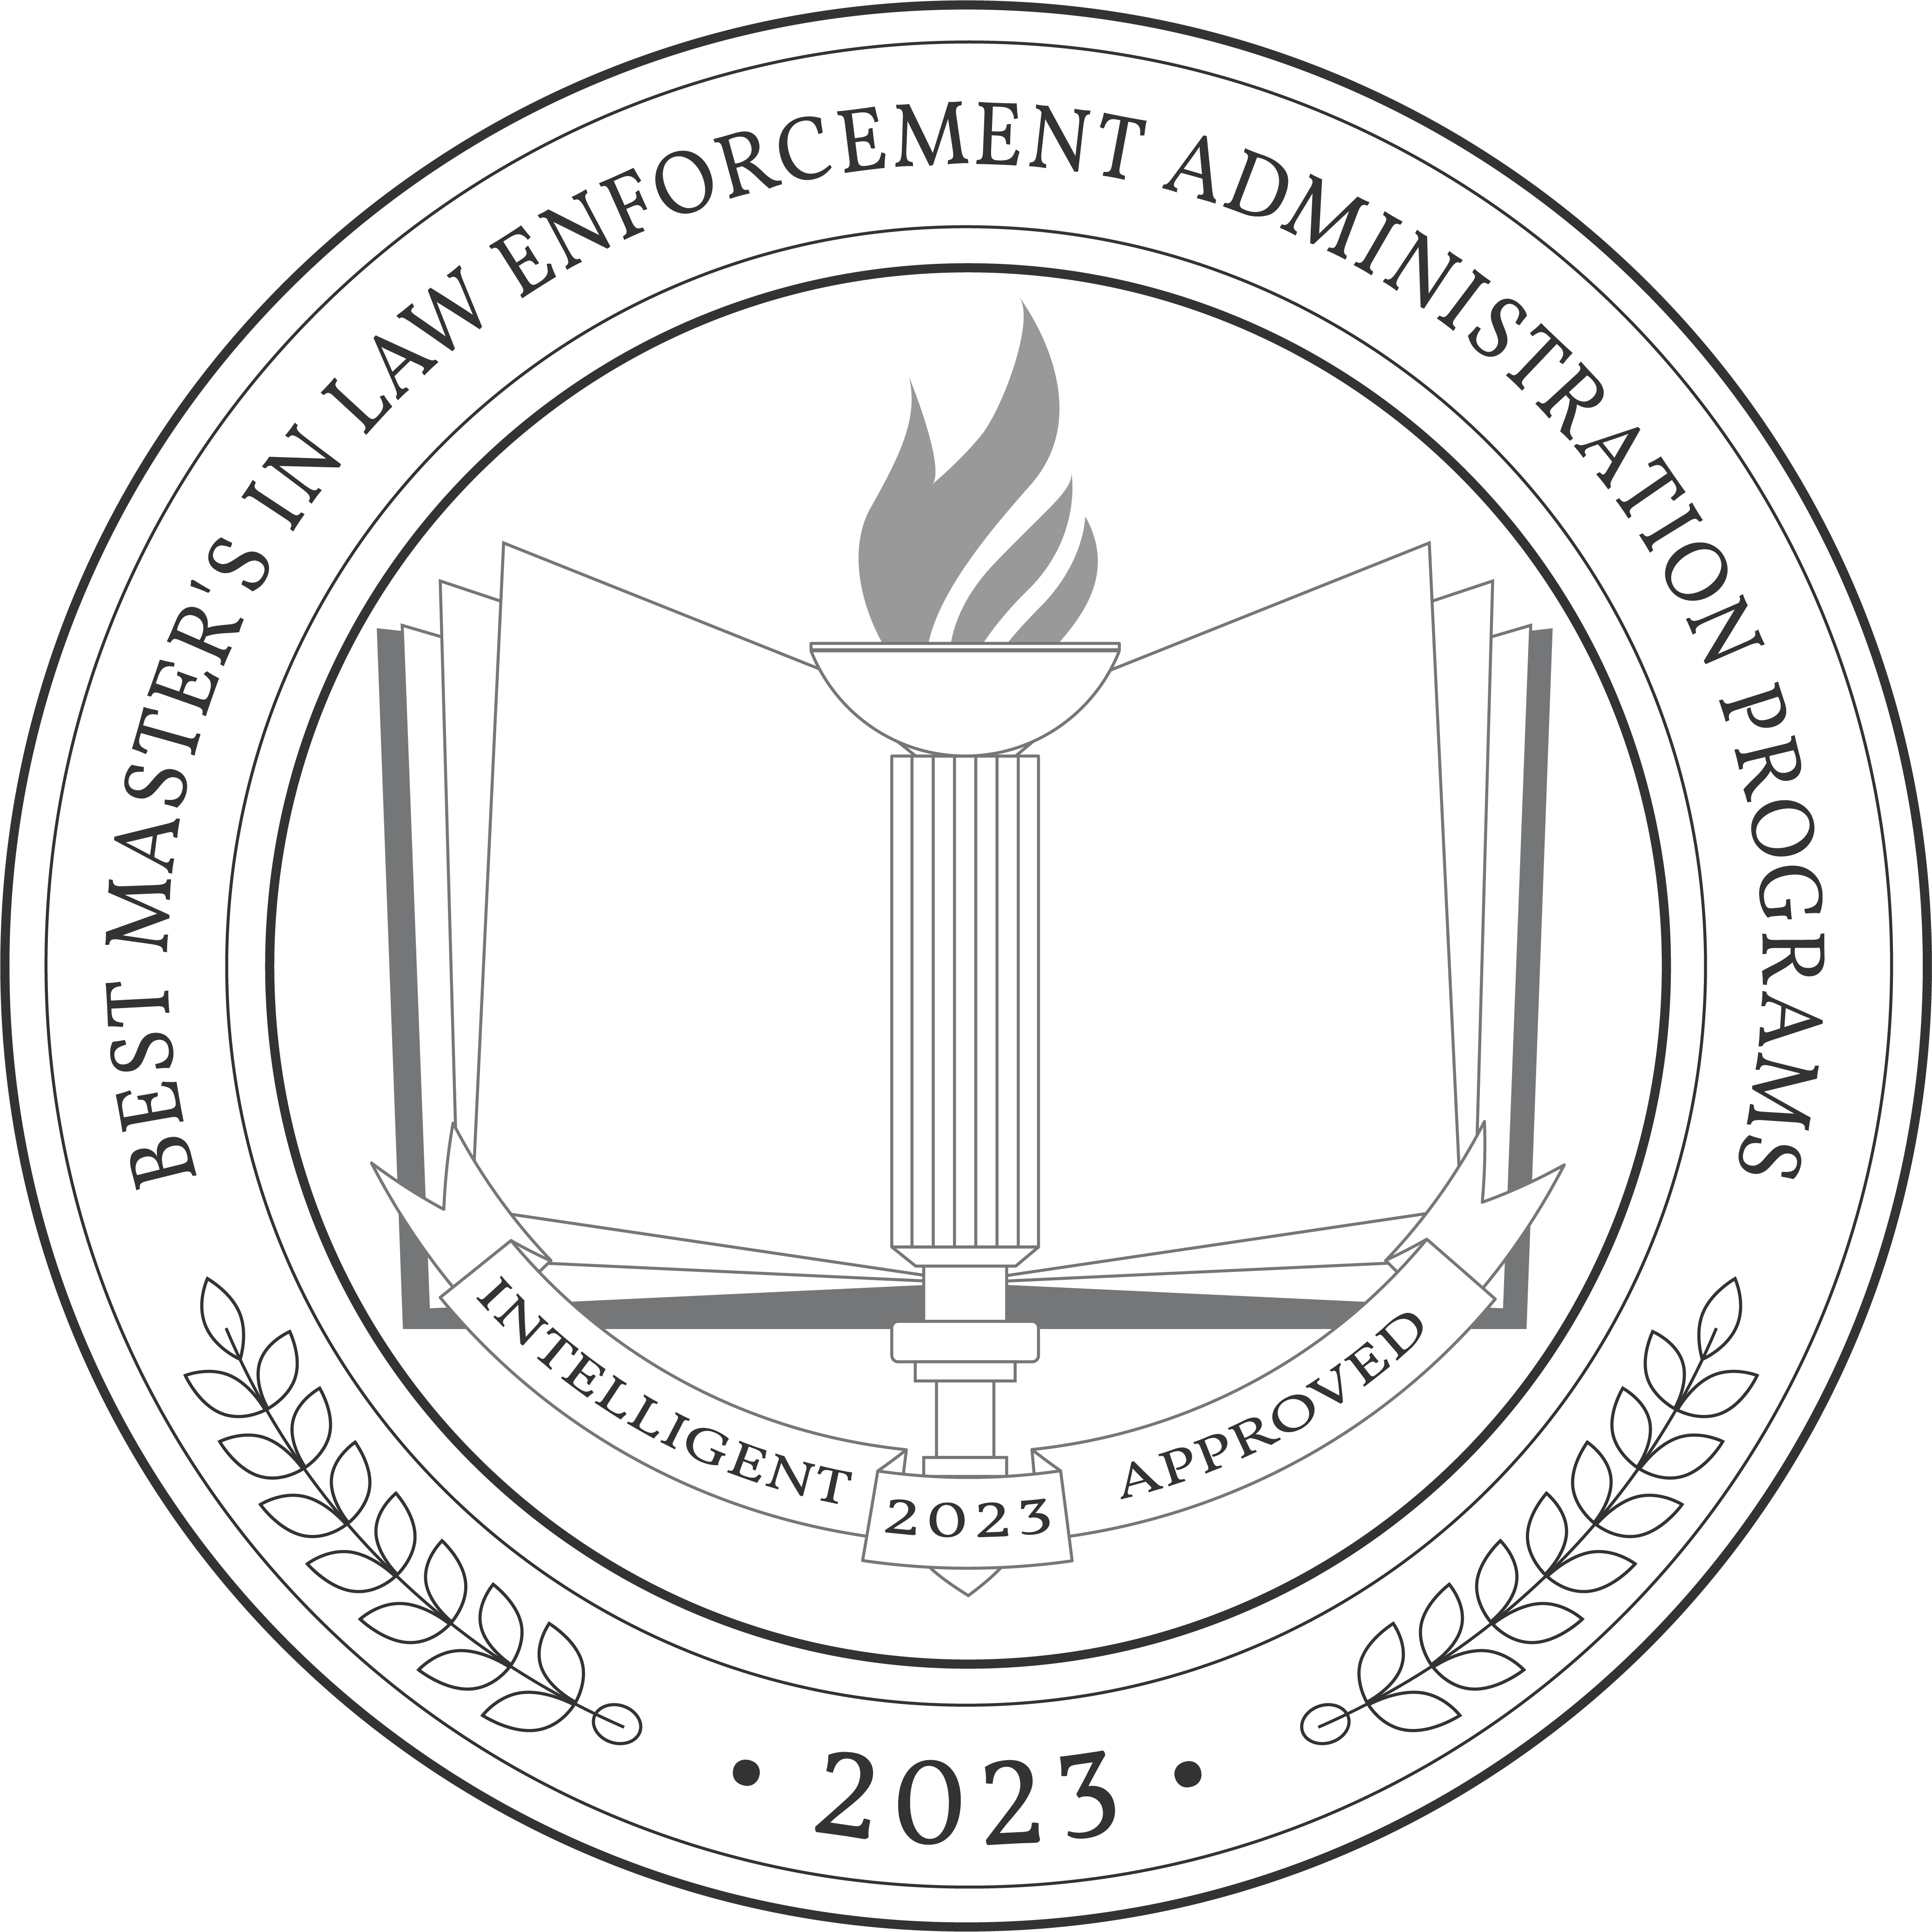 phd programs in law enforcement